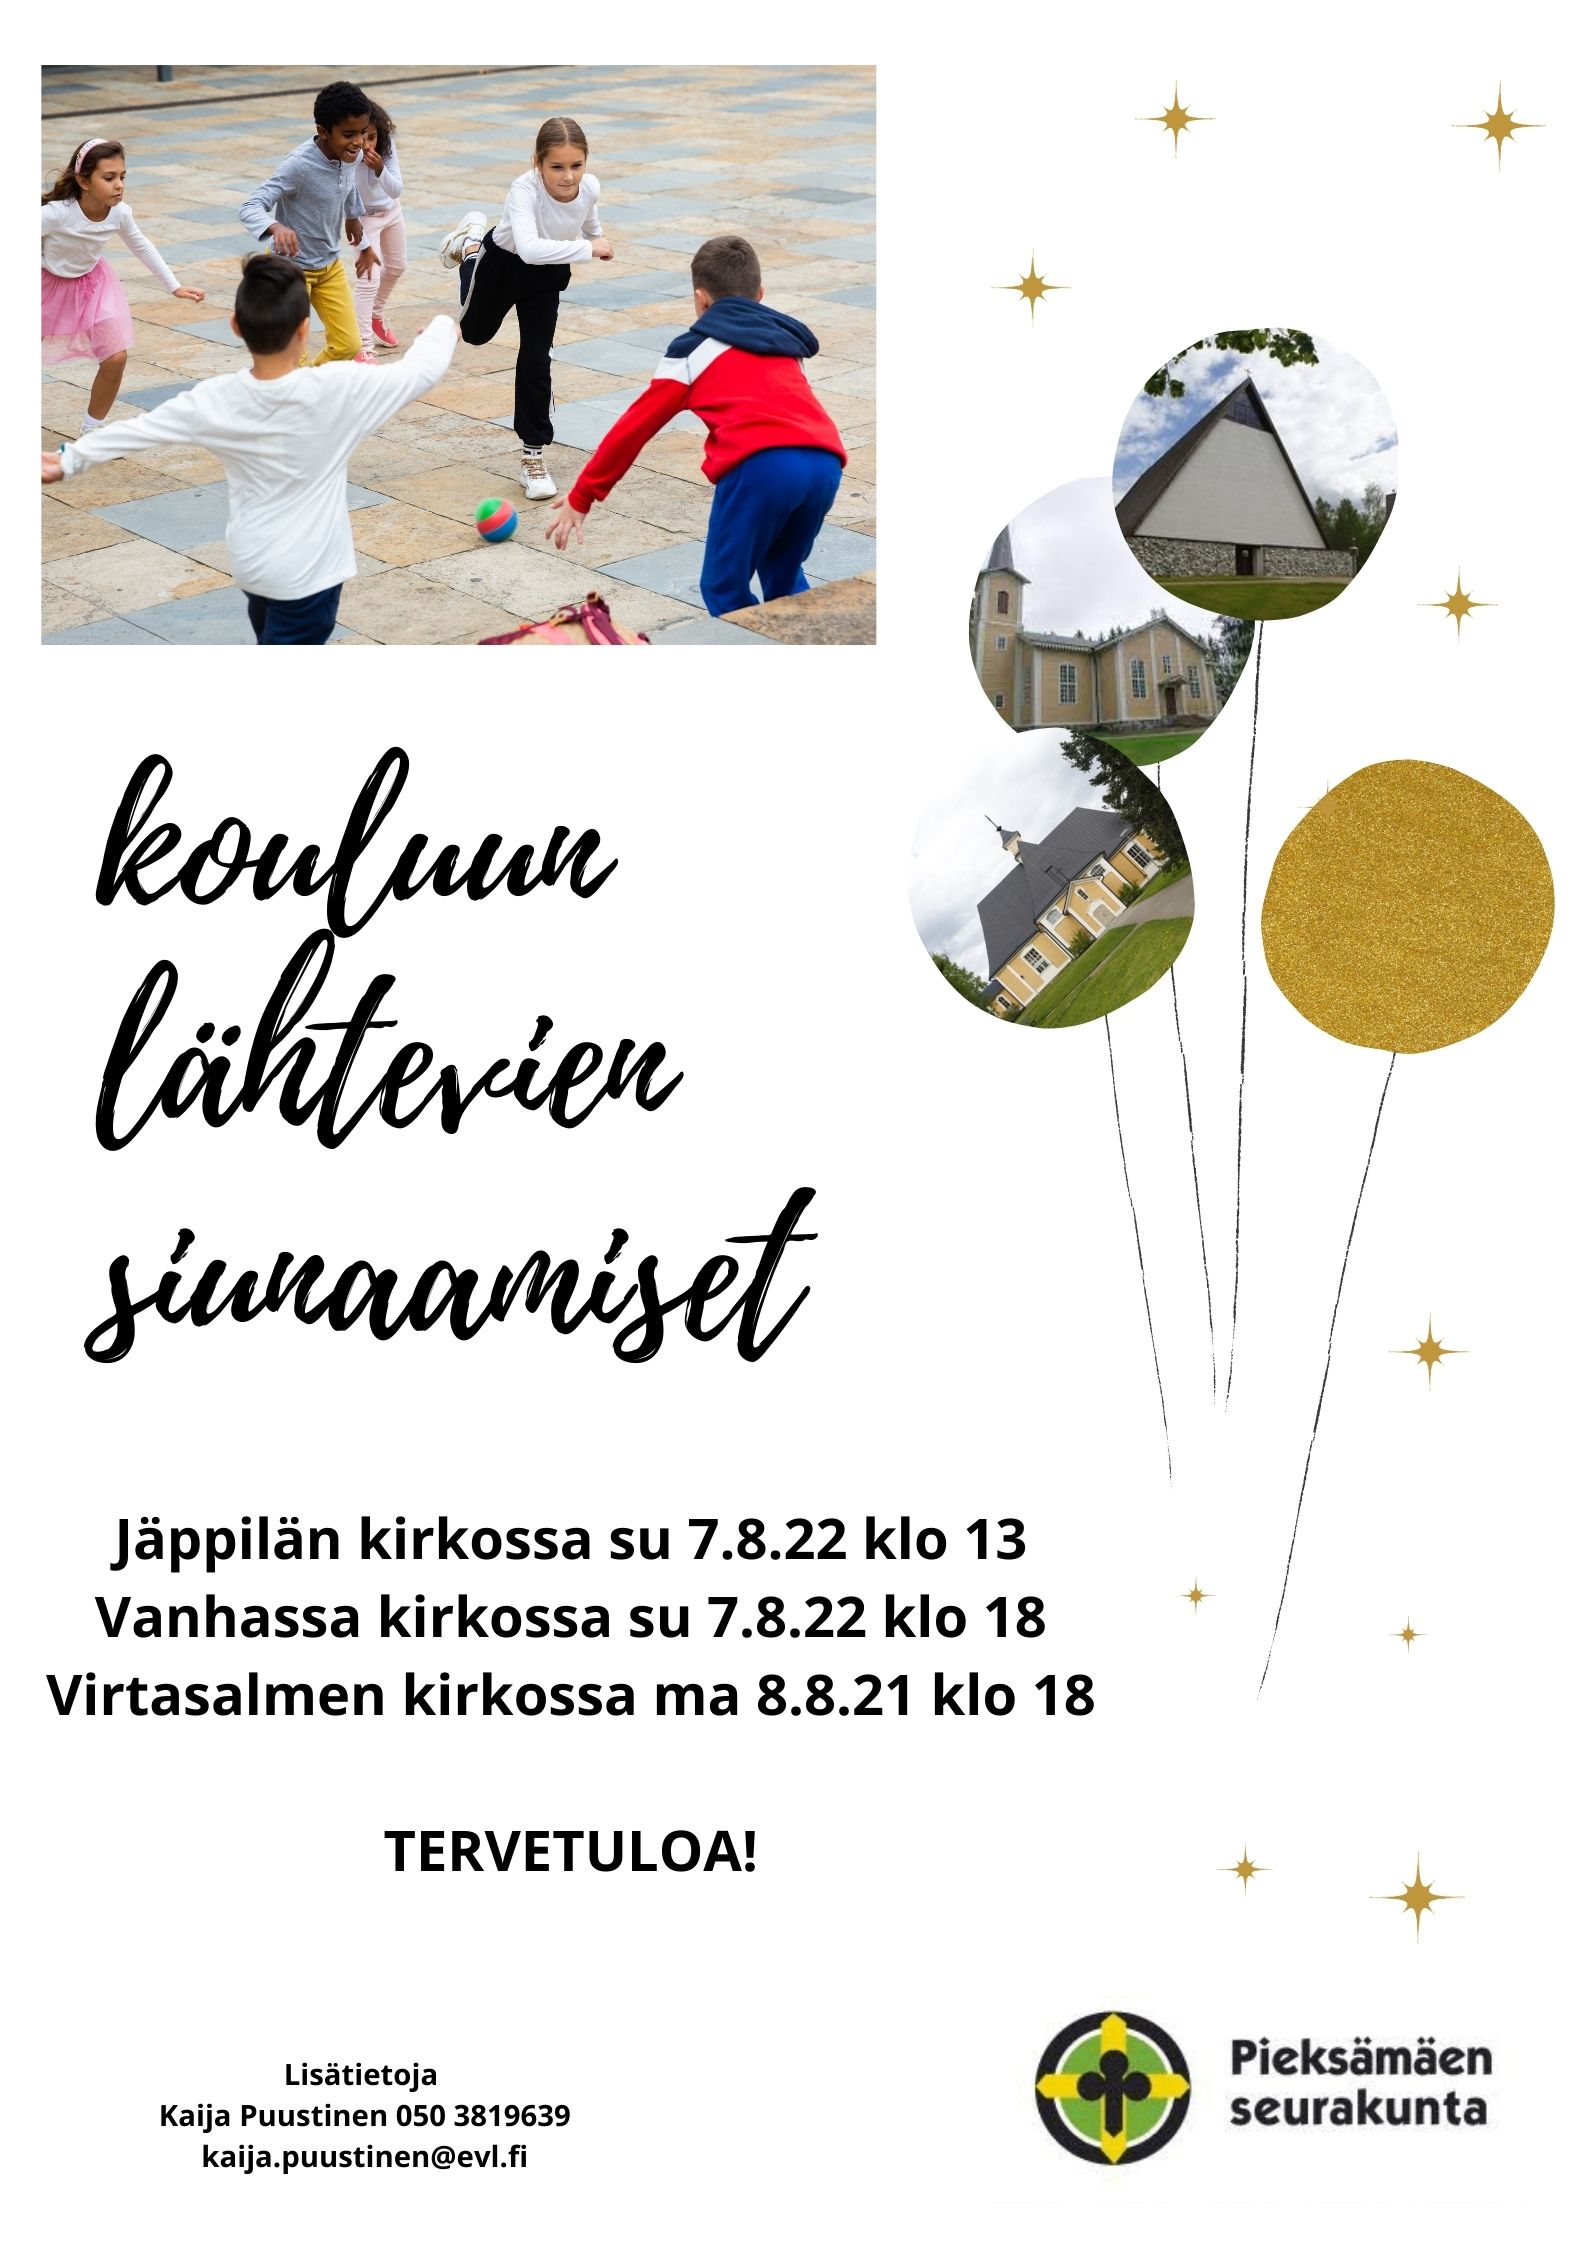 kutsu kouluun lähtevien siunaamiseen, leikkivät lapset ja Jäppilän, Virtasalmen ja Vanha kirkko kuvina